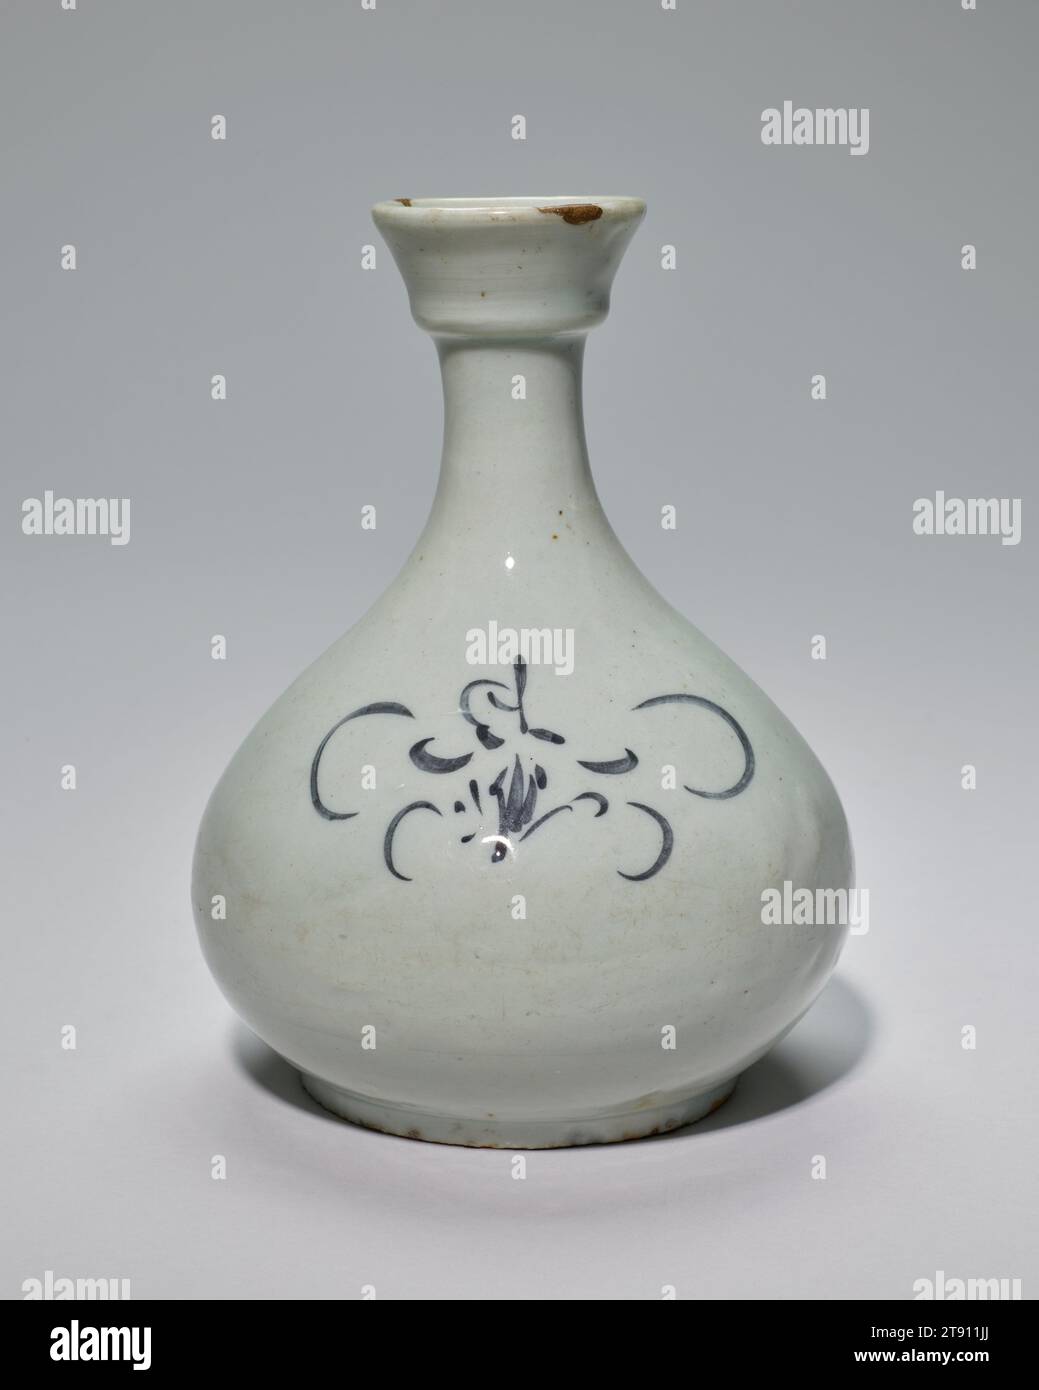 Vase, 18. Jahrhundert, unbekanntes Koreanisch, 1/2 cm (21,59 cm), Porzellan mit Unterglasurblau Dekor, Korea, 18. Jahrhundert, Chinas kultureller Einfluss auf Korea geht auf über zweitausend Jahre zurück, als sie zum ersten Mal Handel betrieben. Dieser Einfluss ist in der koreanischen Keramikproduktion zu beobachten, als die örtlichen Töpfer Ende des 14. Jahrhunderts begannen, Porzellan herzustellen, wobei viele ihrer Waren chinesischen Prototypen nachempfunden waren. Diese spätere Vase ist keine Ausnahme, da sie einen becherartigen Mund aufweist, der auch in chinesischem Porzellan zu sehen ist. Das abstrakte Design in blauer Unterglasur erinnert an Blumen Stockfoto